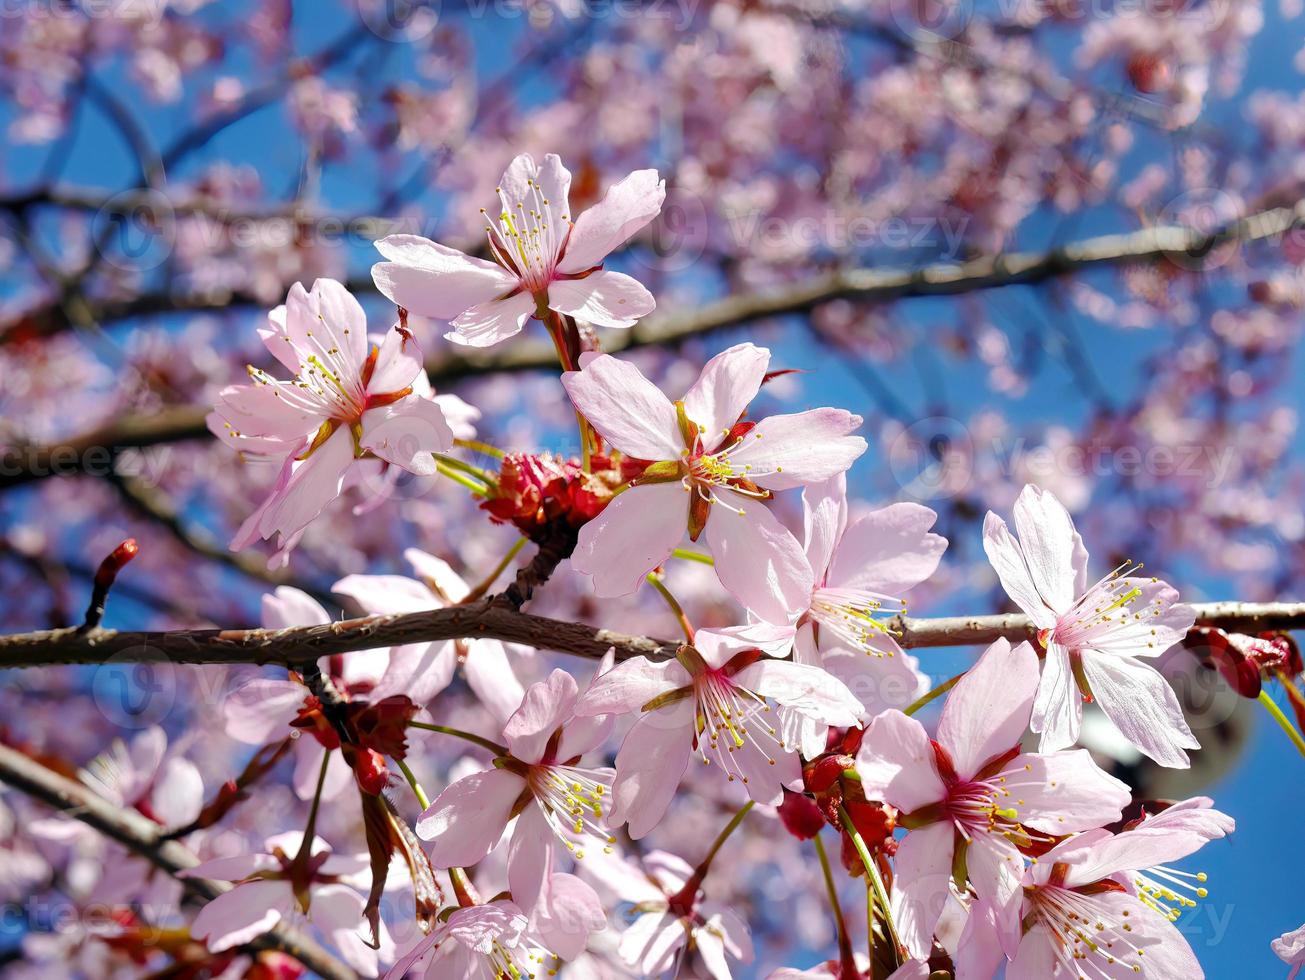 schließen oben Bündel von wild Himalaya Kirsche blühen Blumen, Riese Tiger Blumen, Rosa Sakura, Prunus Cerasoide, mit Blau Himmel Hintergrund, selektiv Fokus foto